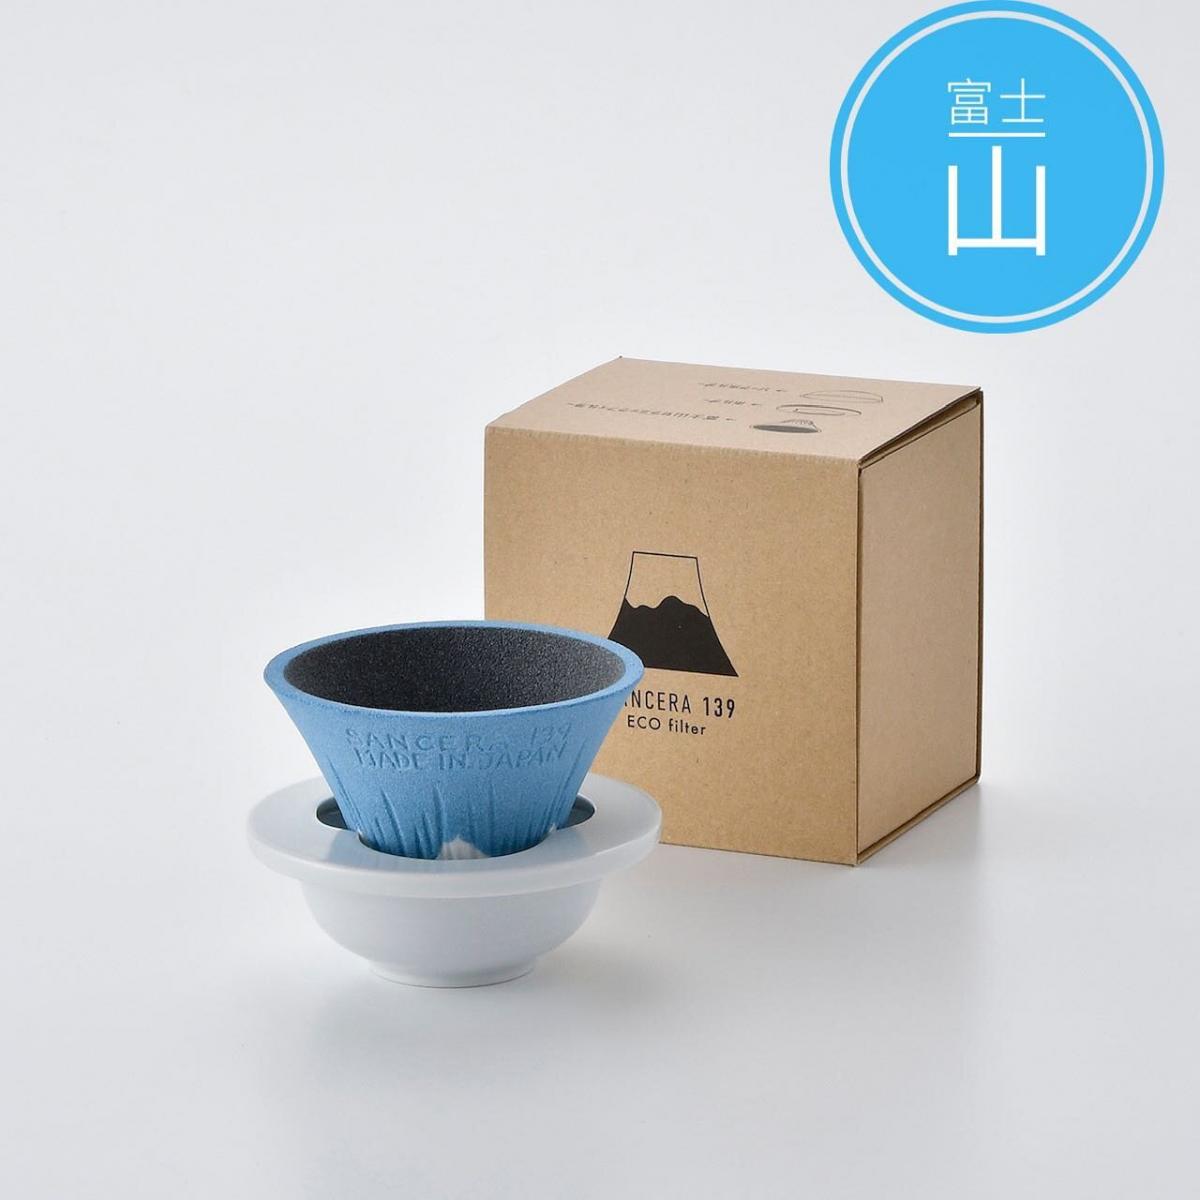 OTHER - SANCERA 139 COFIL fuji 陶瓷濾杯｜咖啡濾杯 - 青富士 (藍)